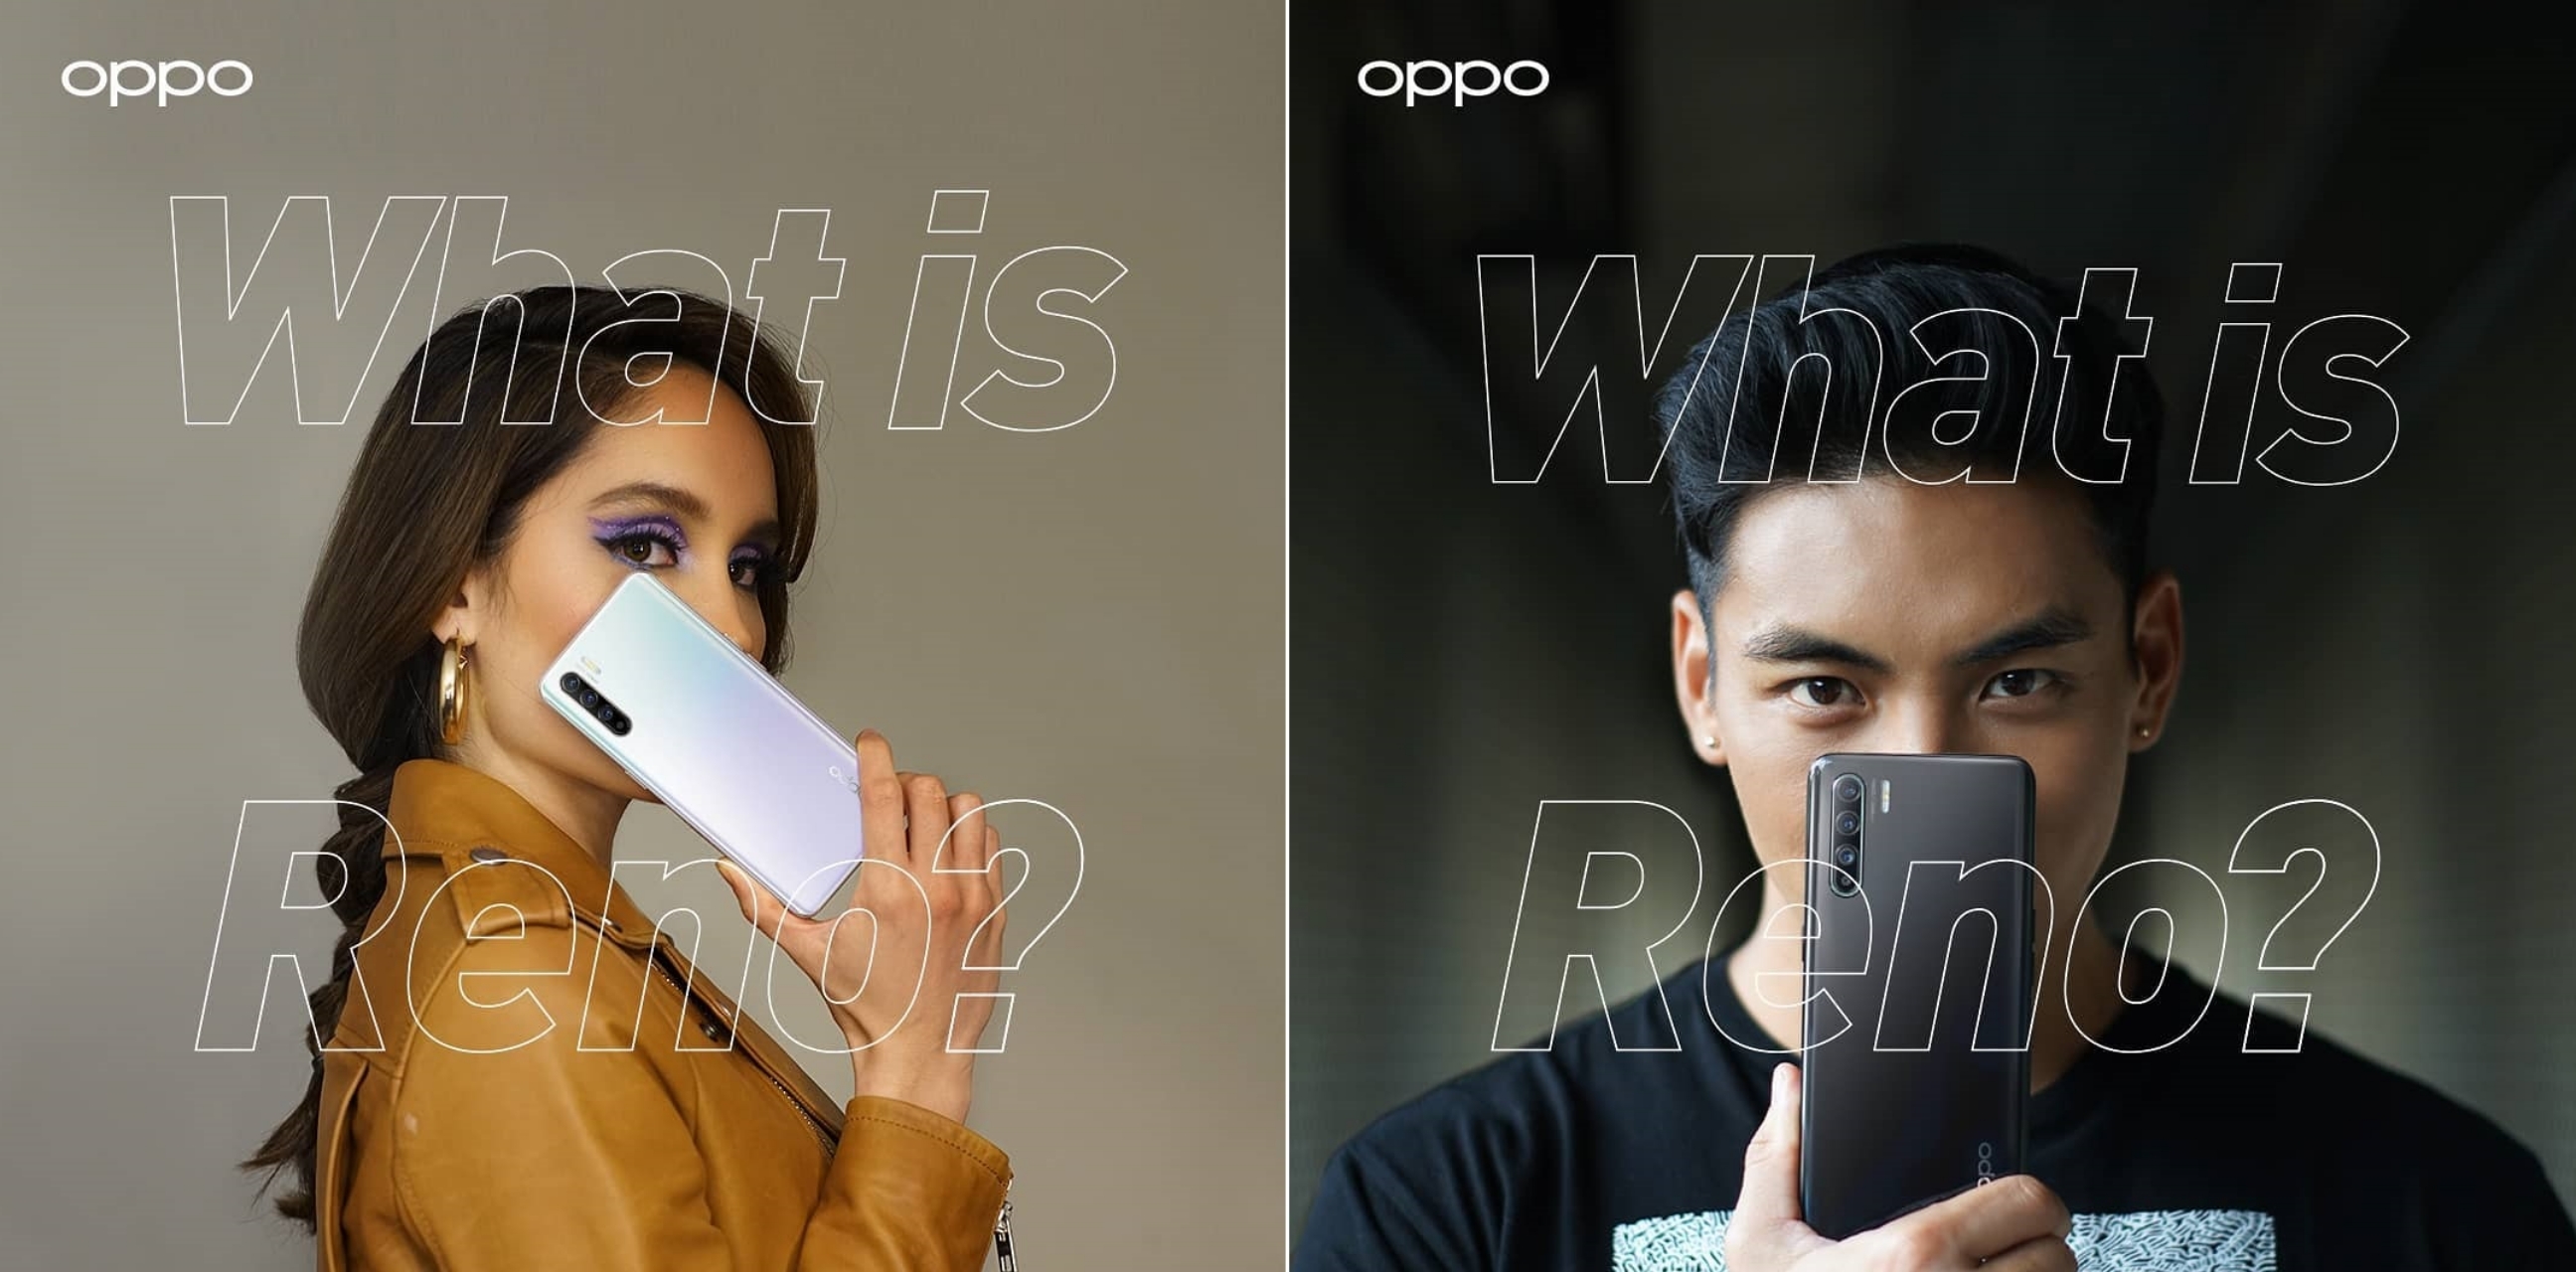 Mengintip 4 fakta Reno3, smartphone anyar yang akan rilis di Indonesia